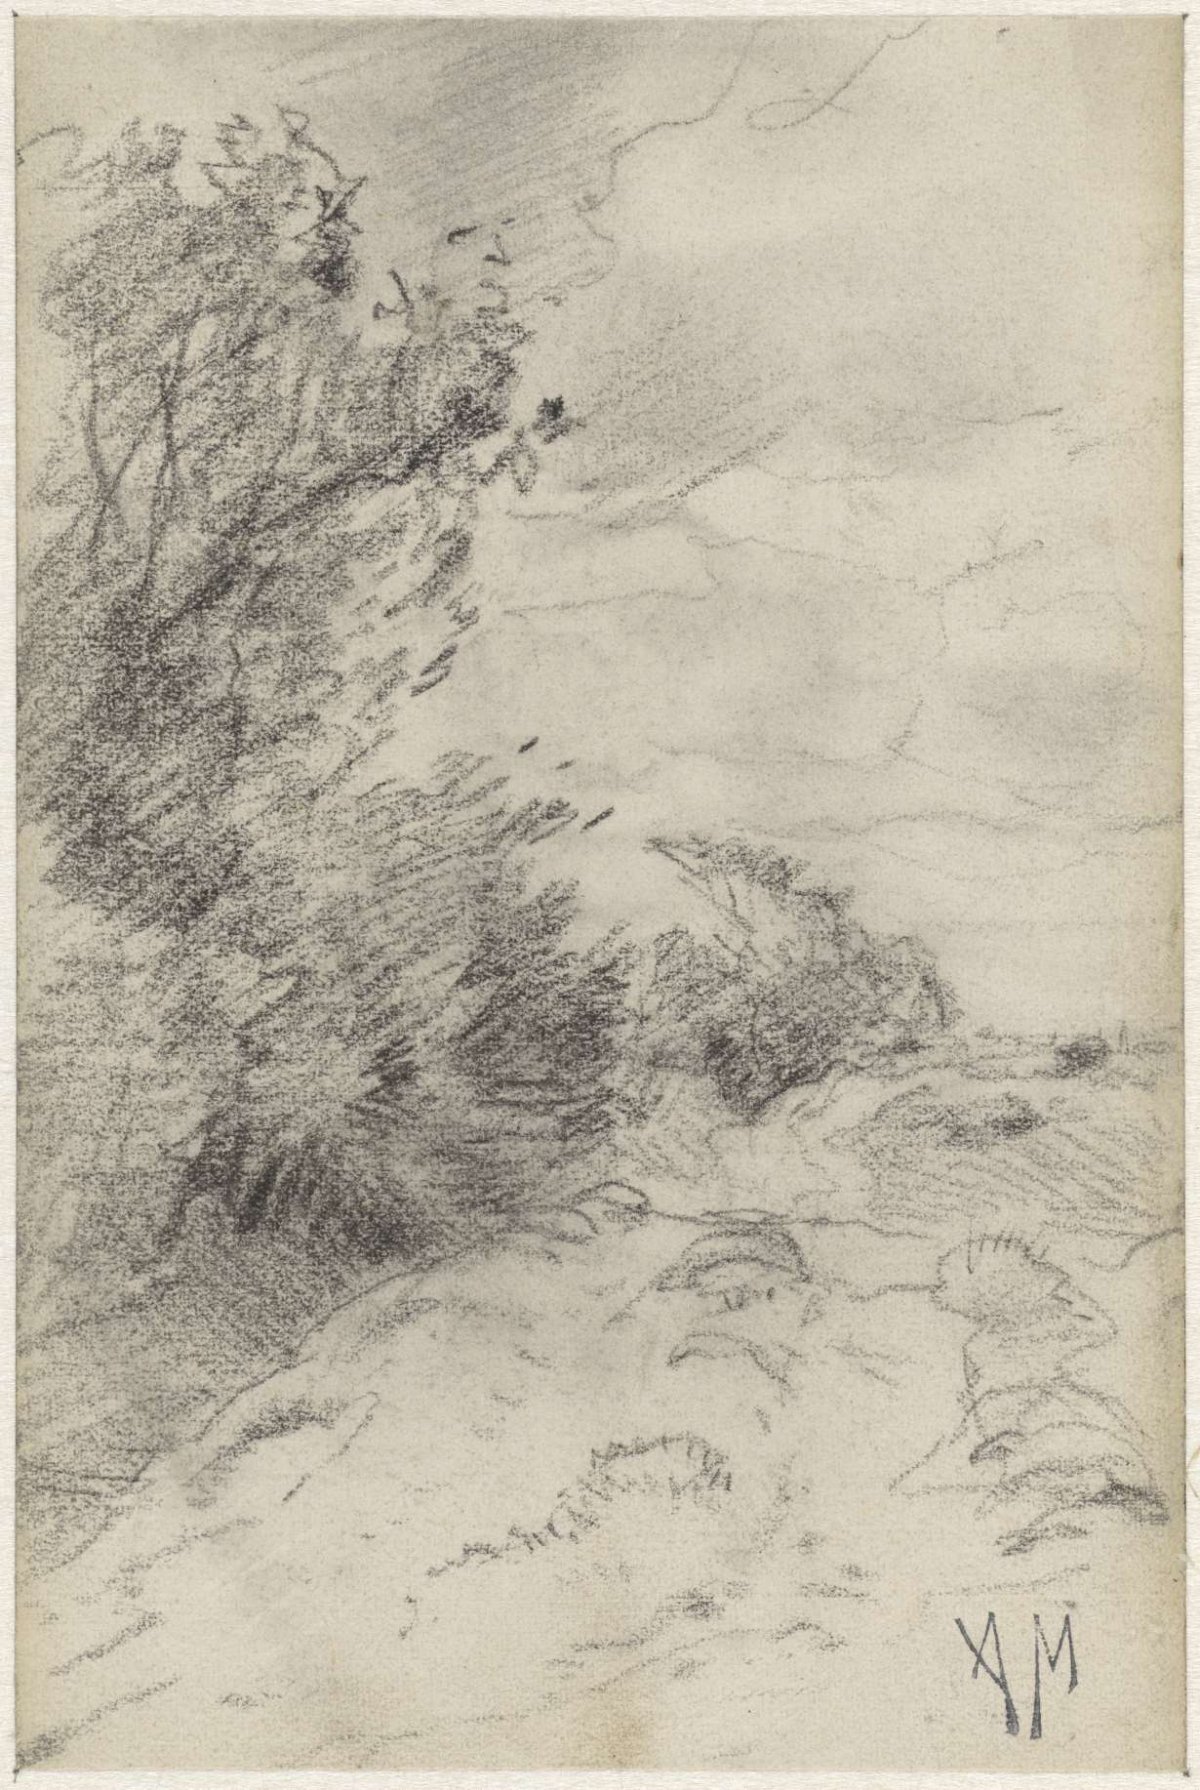 Landscape with bushes, Anton Mauve, 1848 - 1888